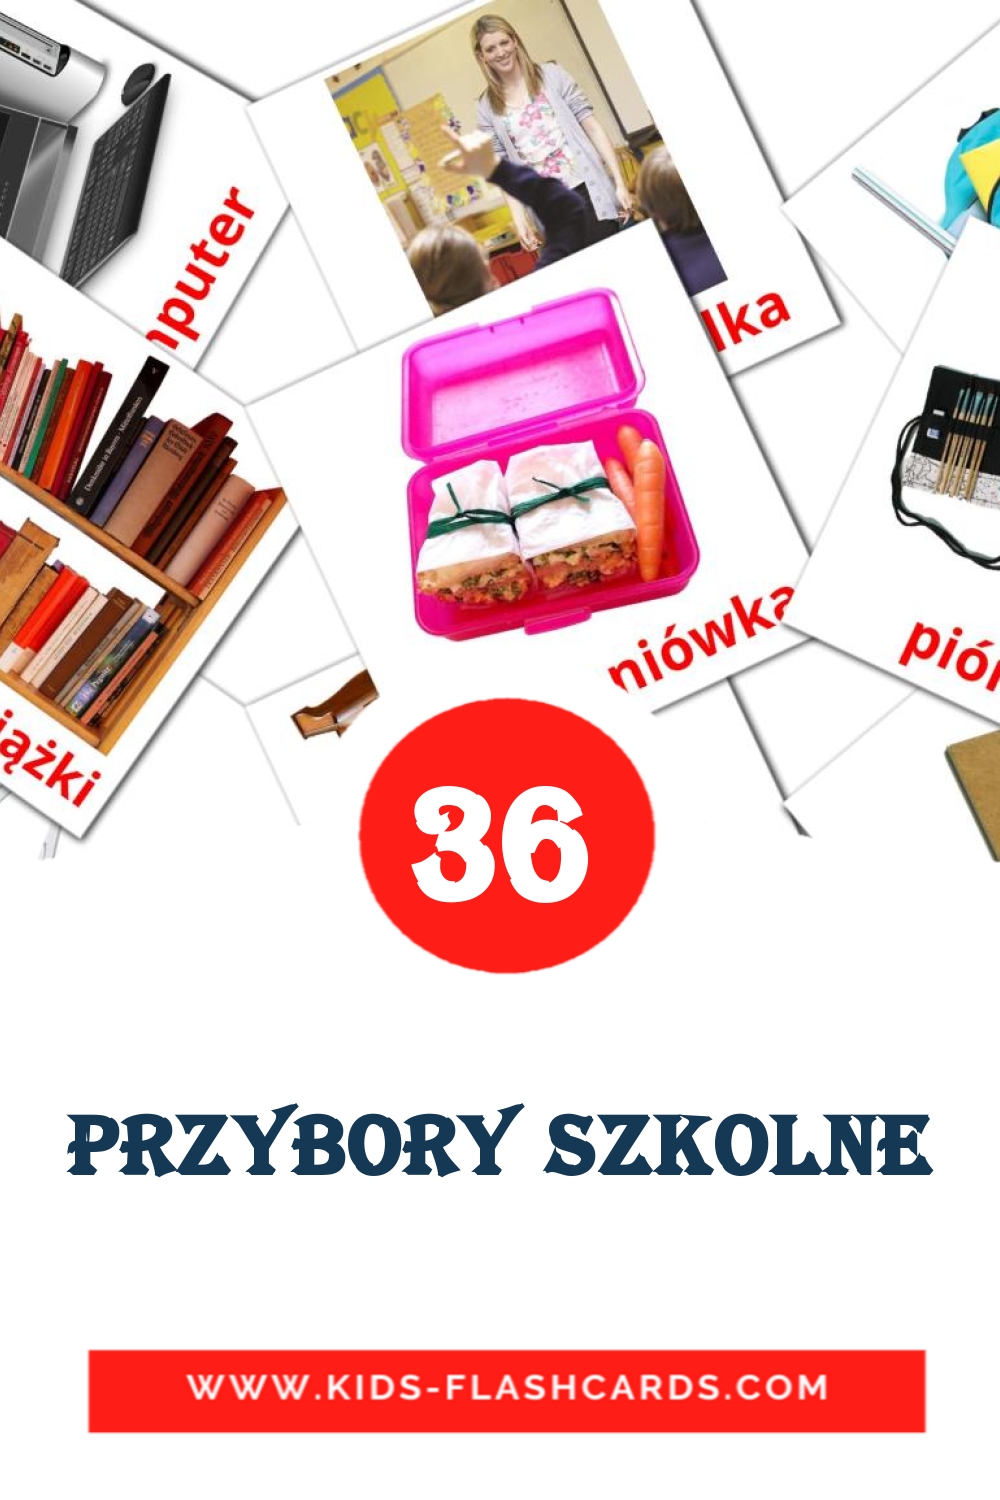 36 Przybory szkolne Bildkarten für den Kindergarten auf Polnisch